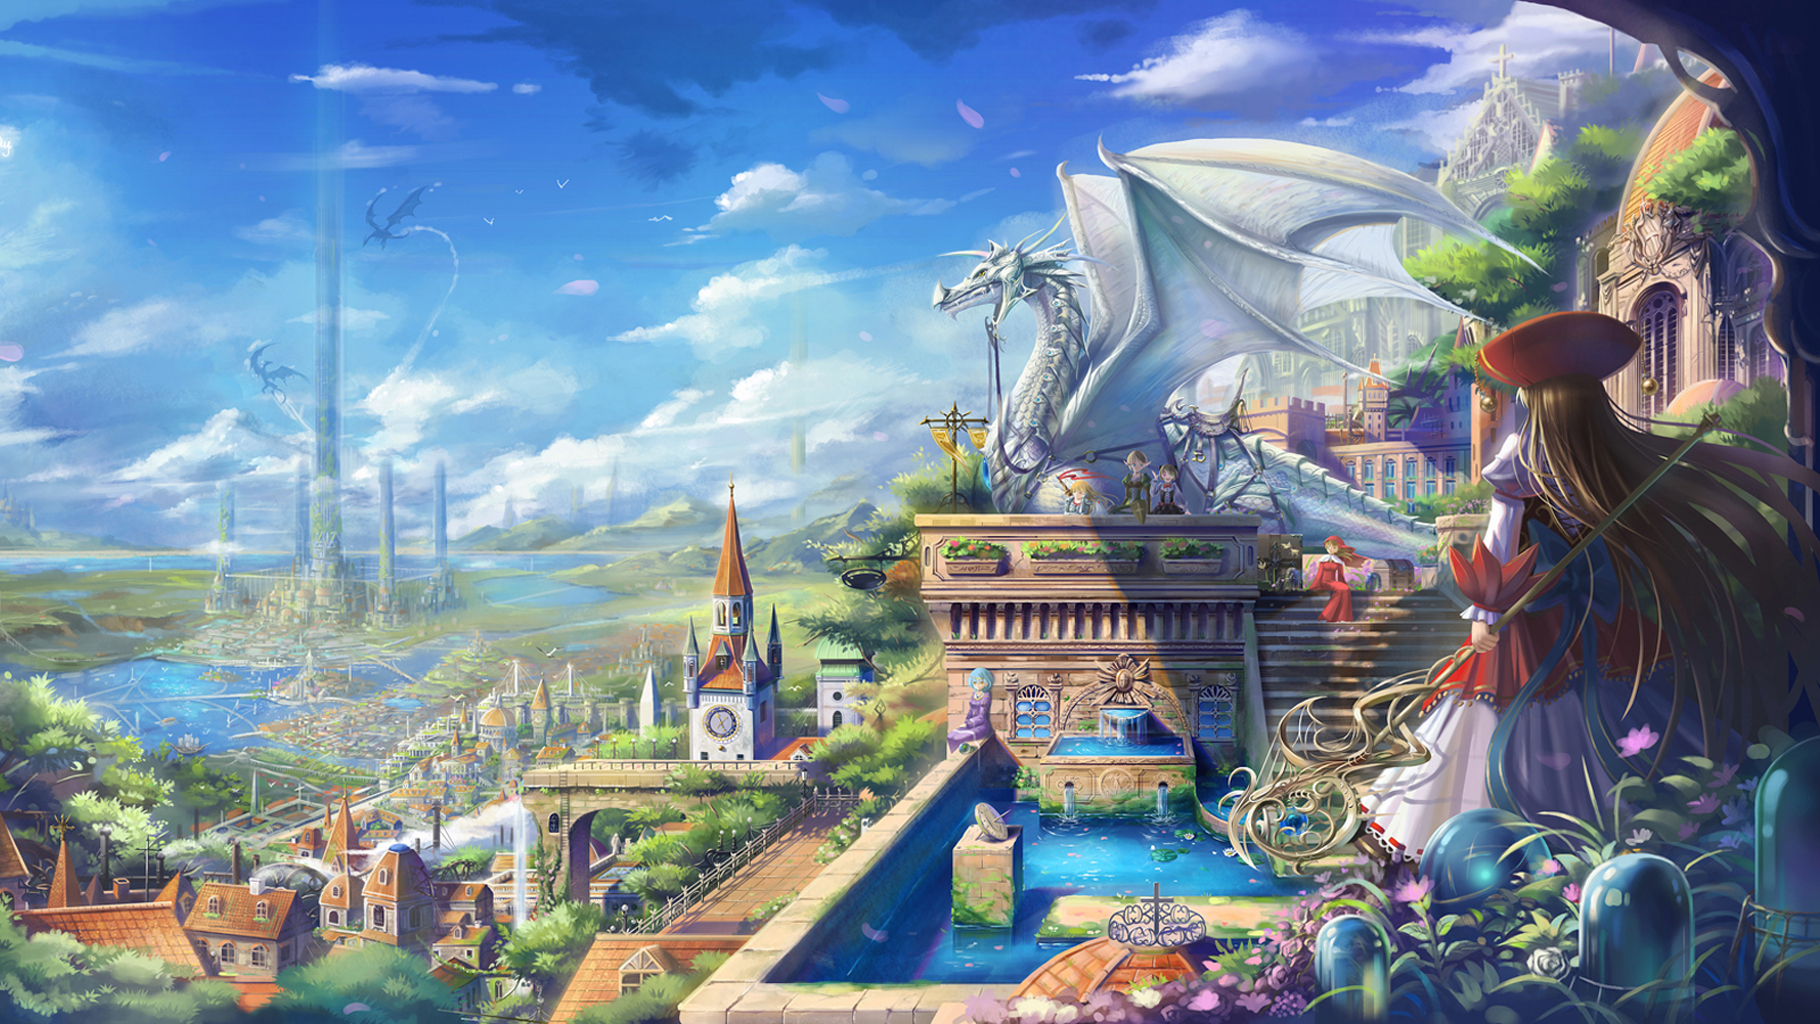 dragon city wallpaper,juegos,juego de acción y aventura,cg artwork,mitología,ilustración